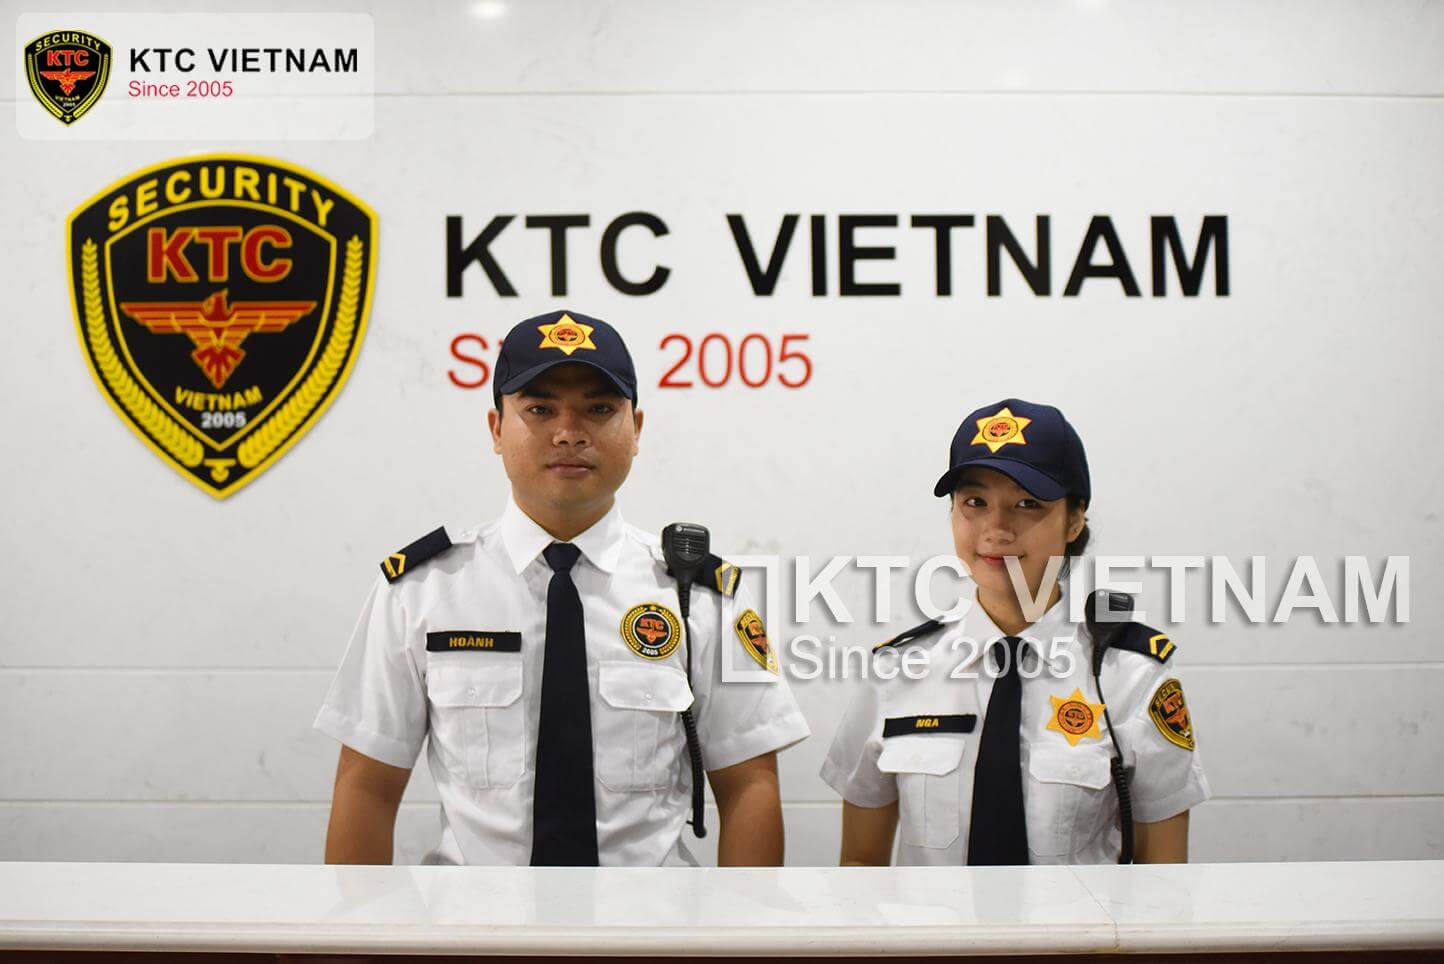 KTC Vietnam’s Management Model